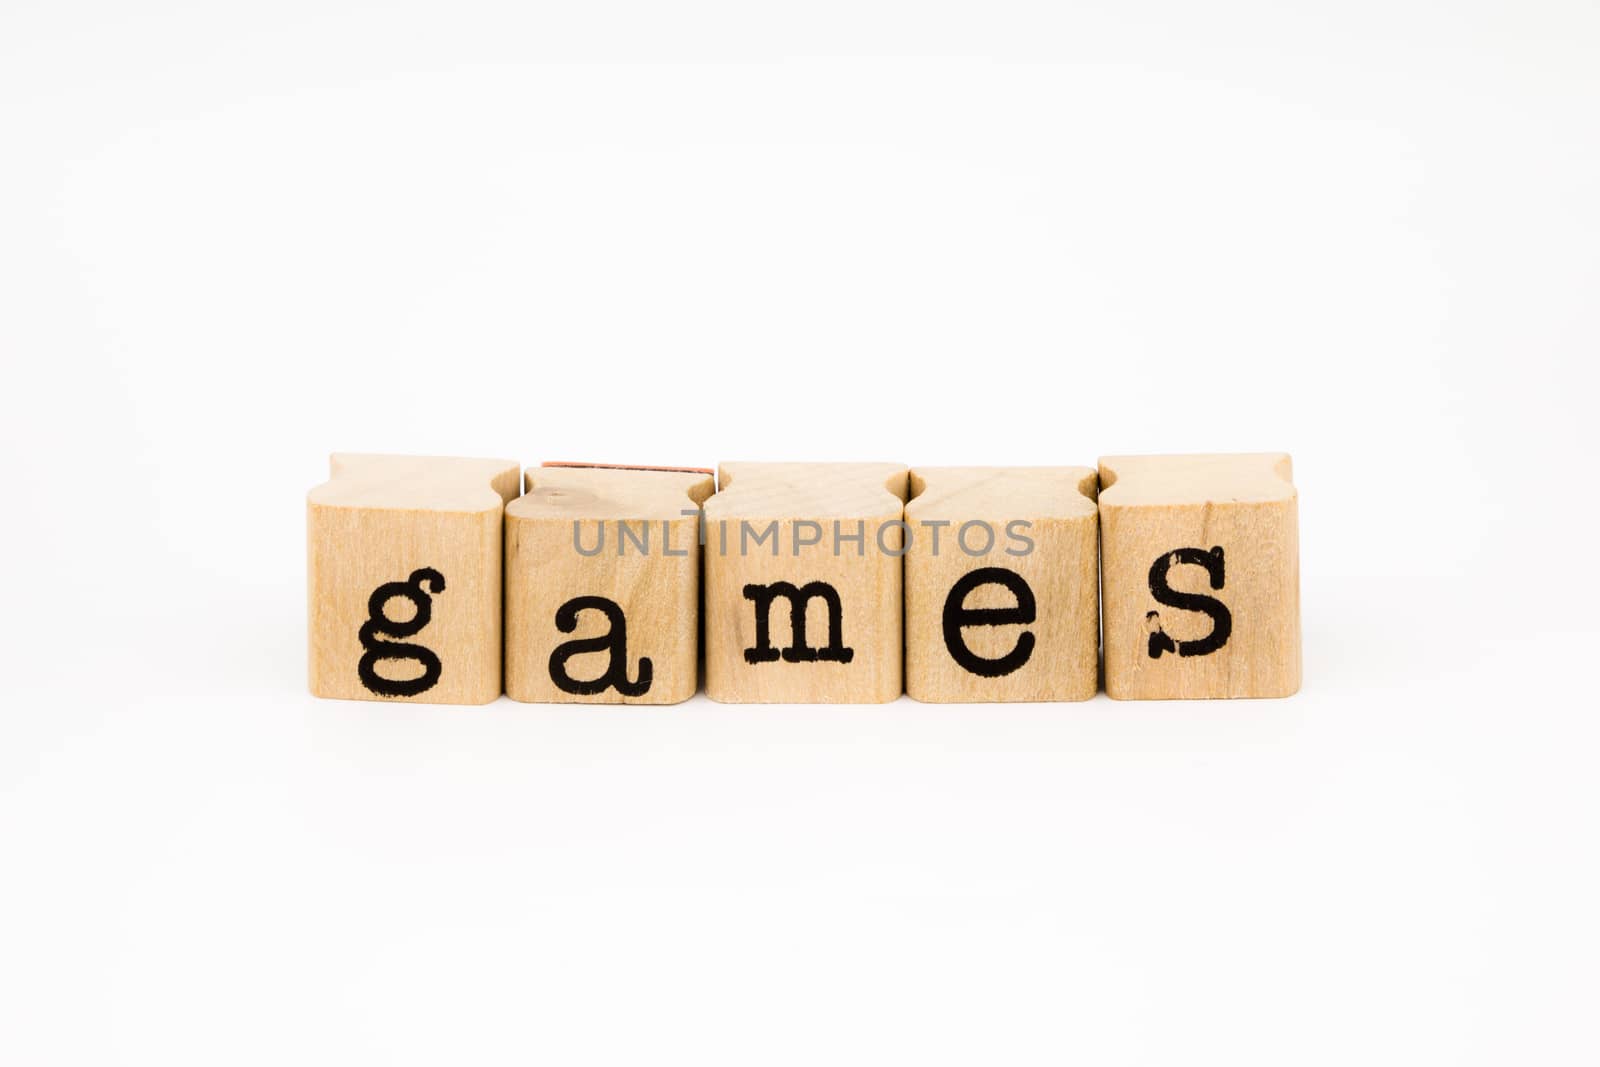 games wording isolate on white background by vinnstock